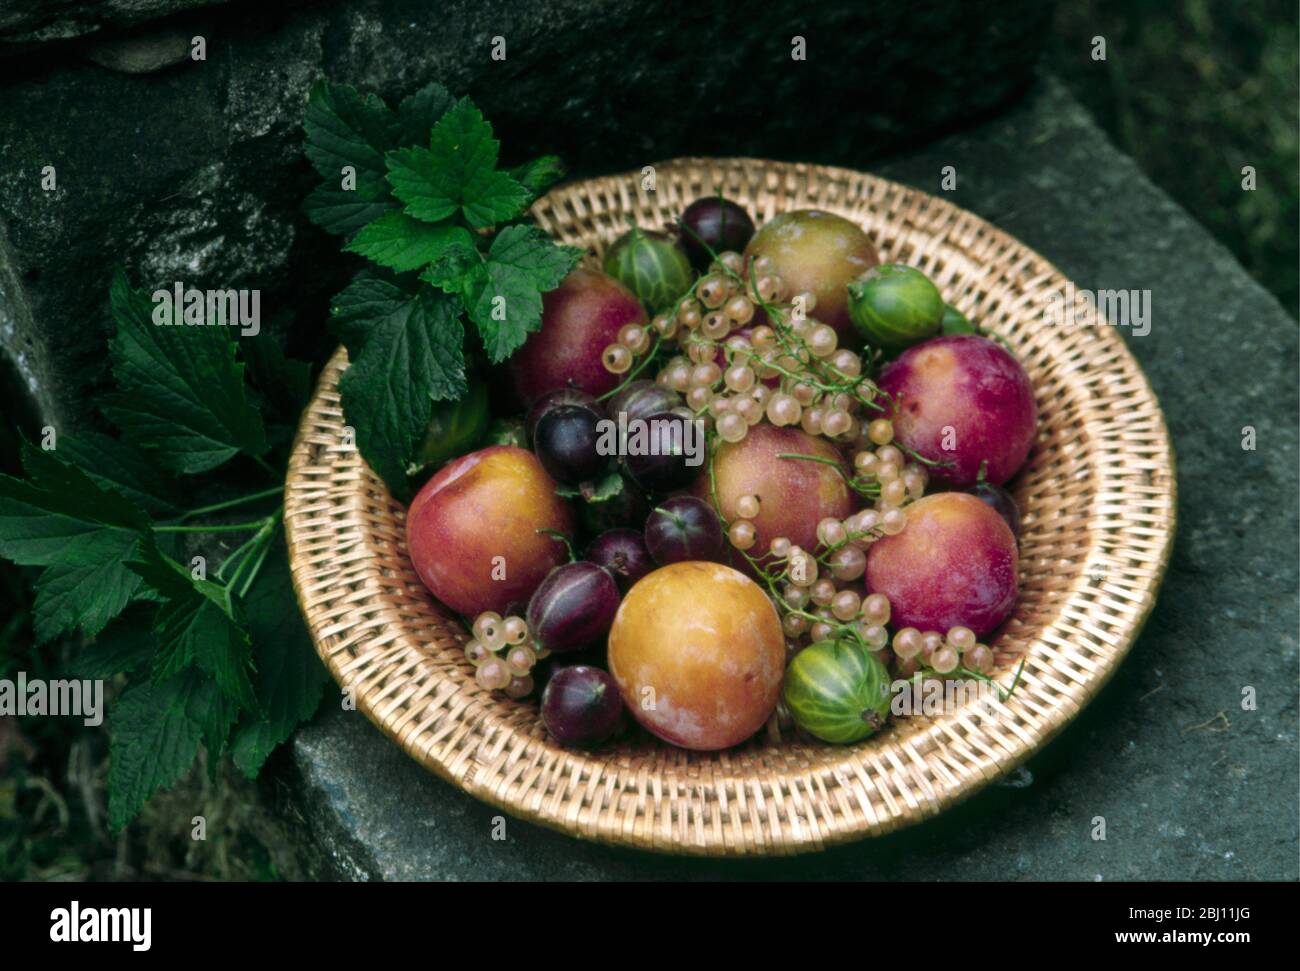 Körbenteller mit spätsommerlichen Früchten - Pflaumen-Weißbeeren, rote und grüne Stachelbeeren - Stockfoto